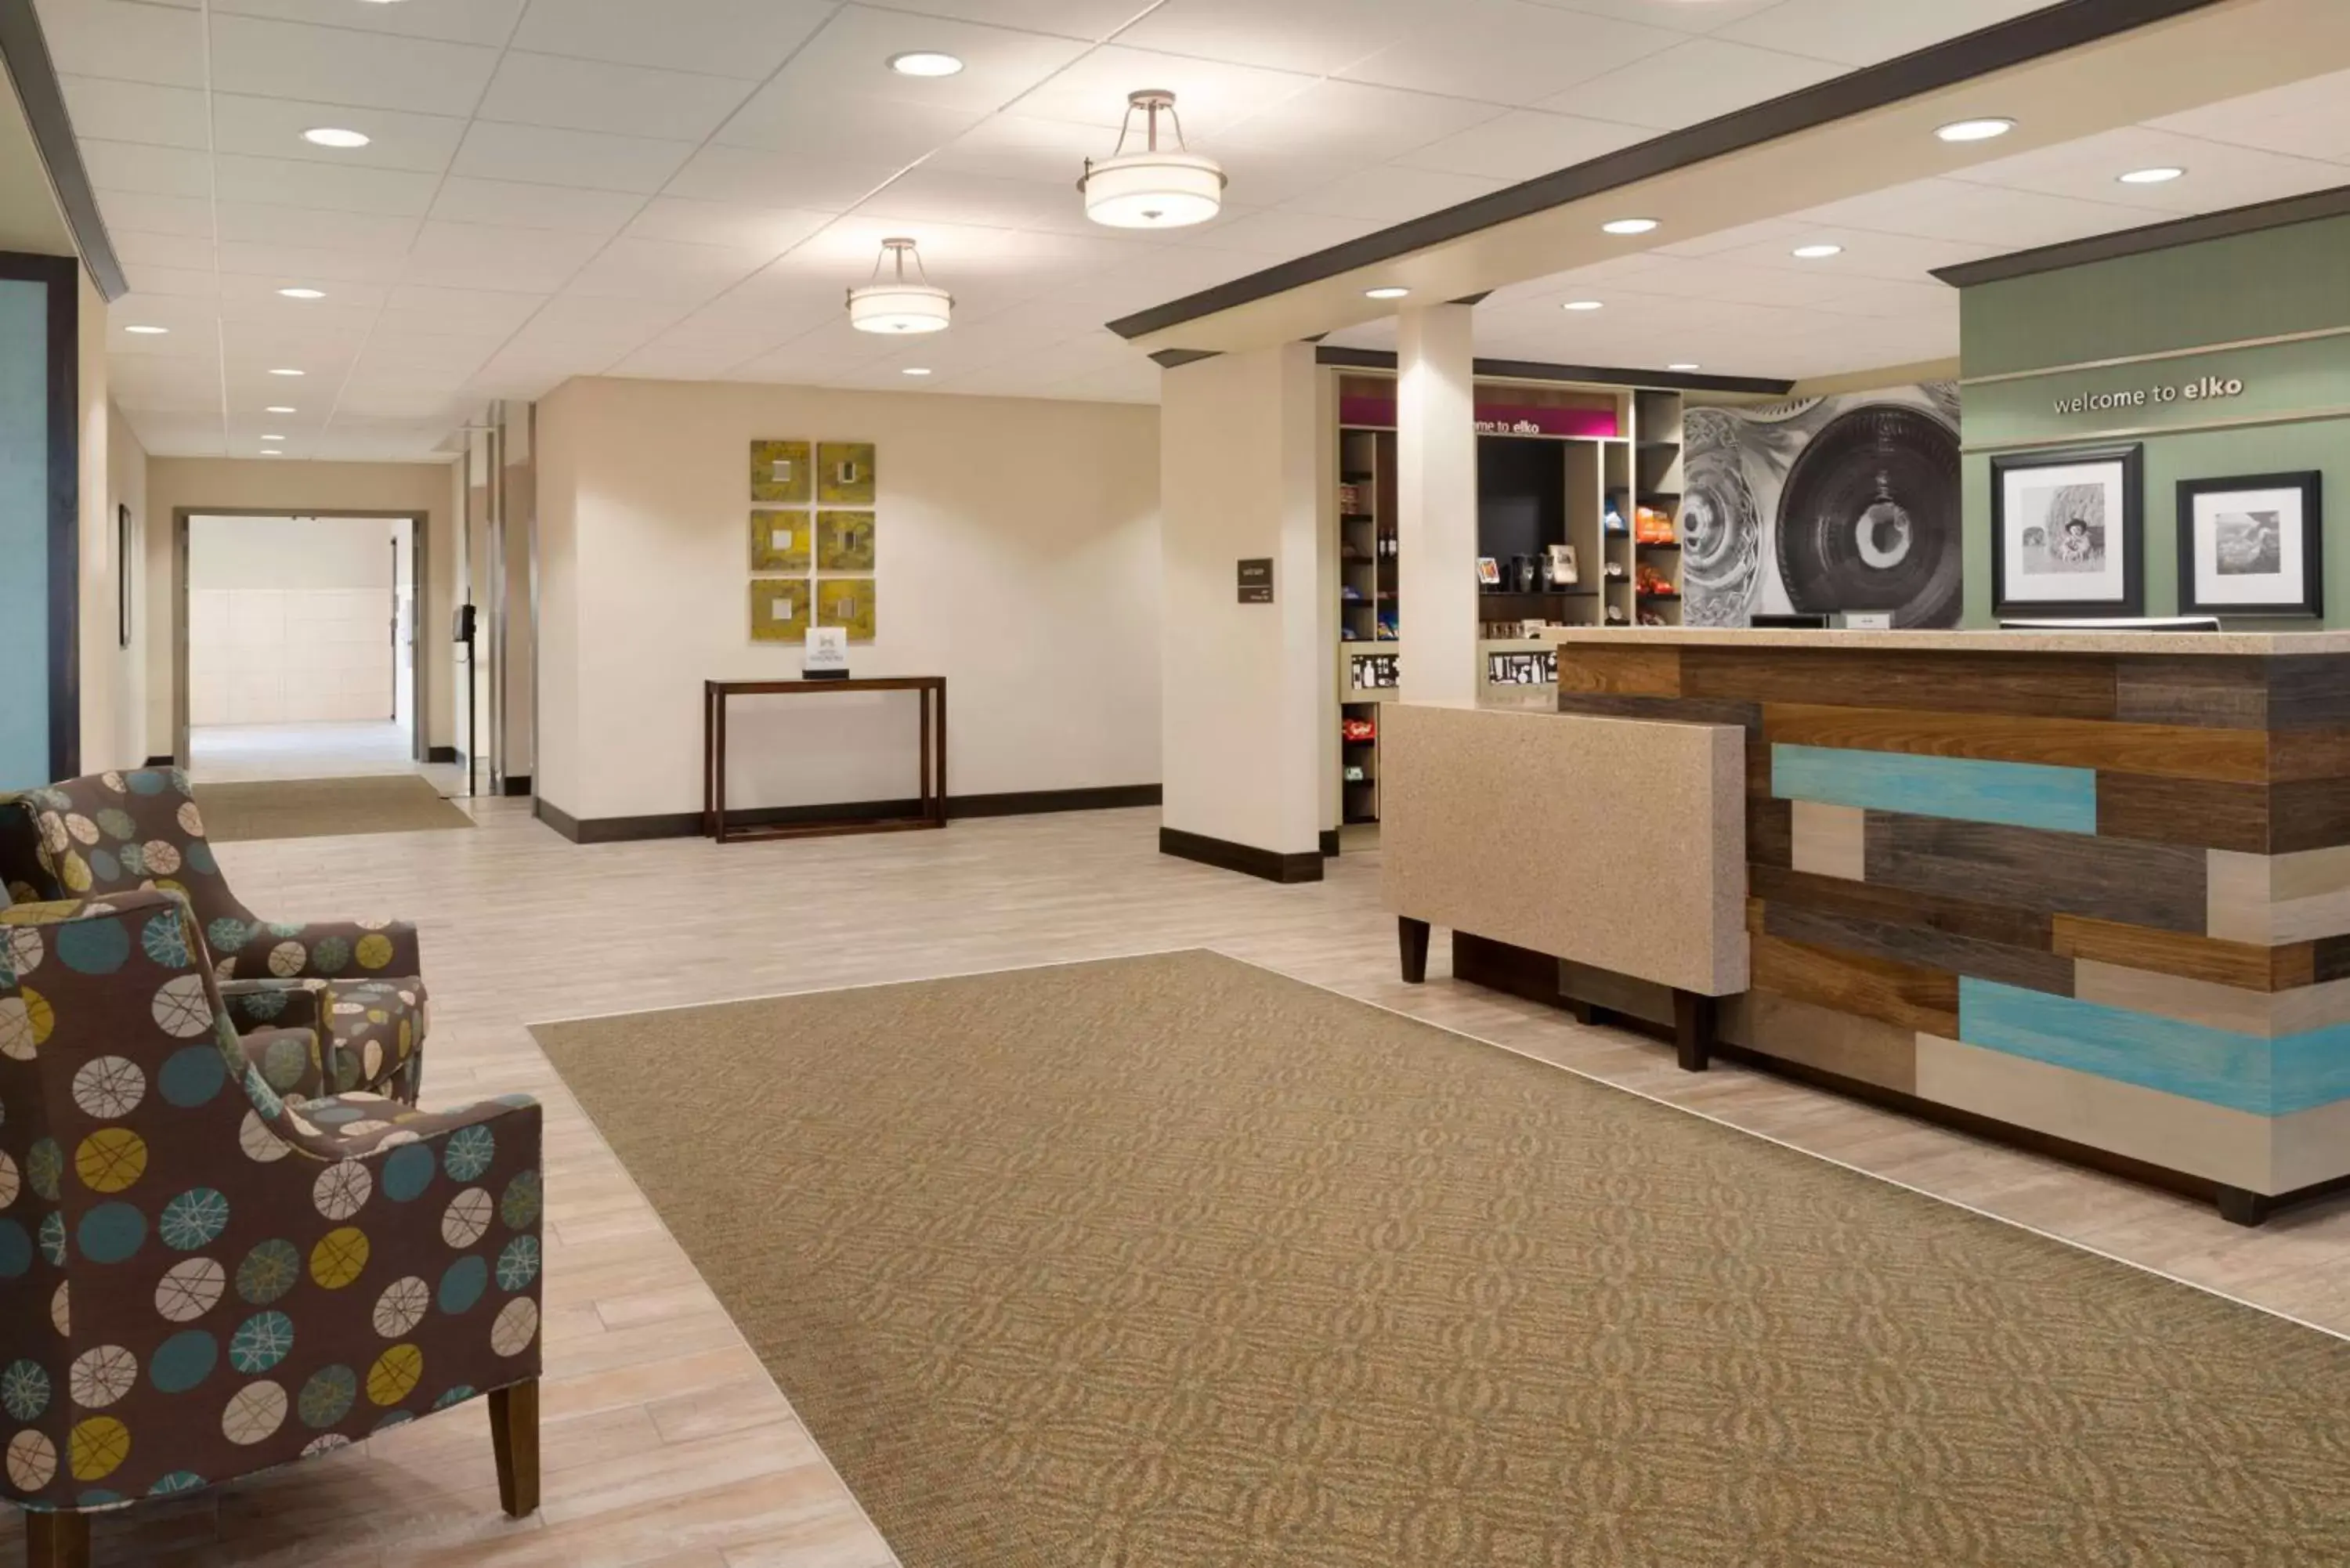 Lobby or reception, Lobby/Reception in Hampton Inn by Hilton Elko Nevada